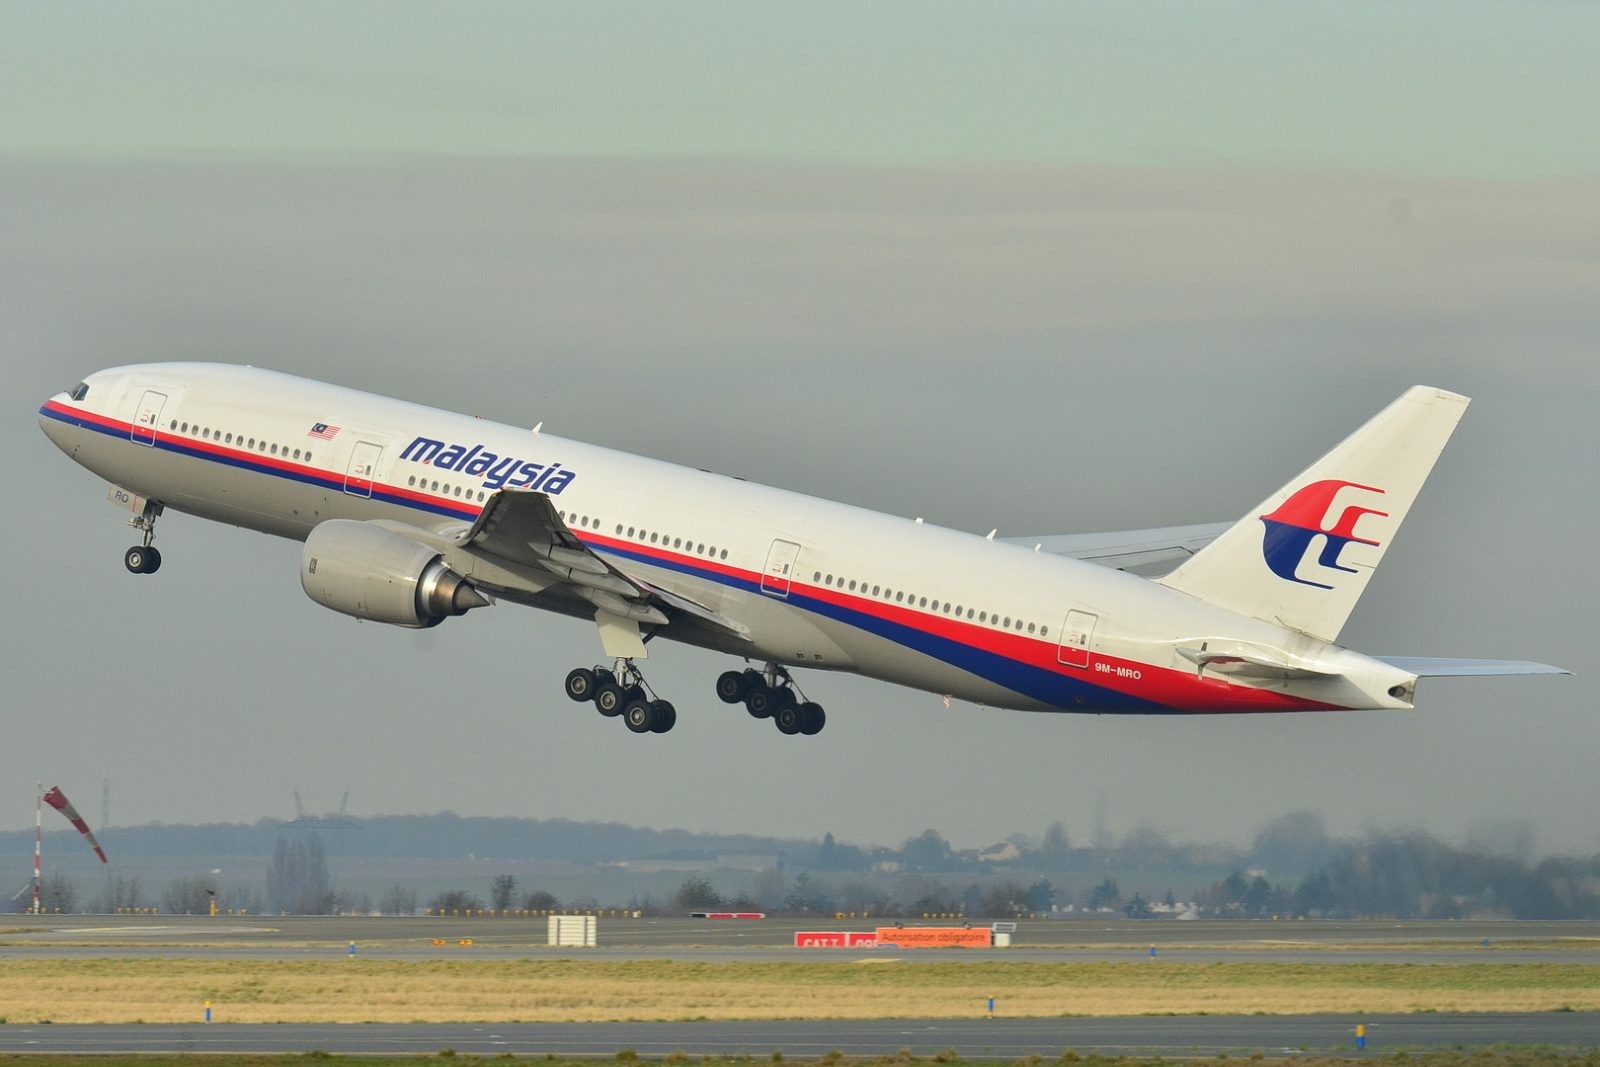 Samolot MAF370, który uległ katastrofie &#8211; zdjęcie z 2011 r. /Fot. Wikimedia Commons
